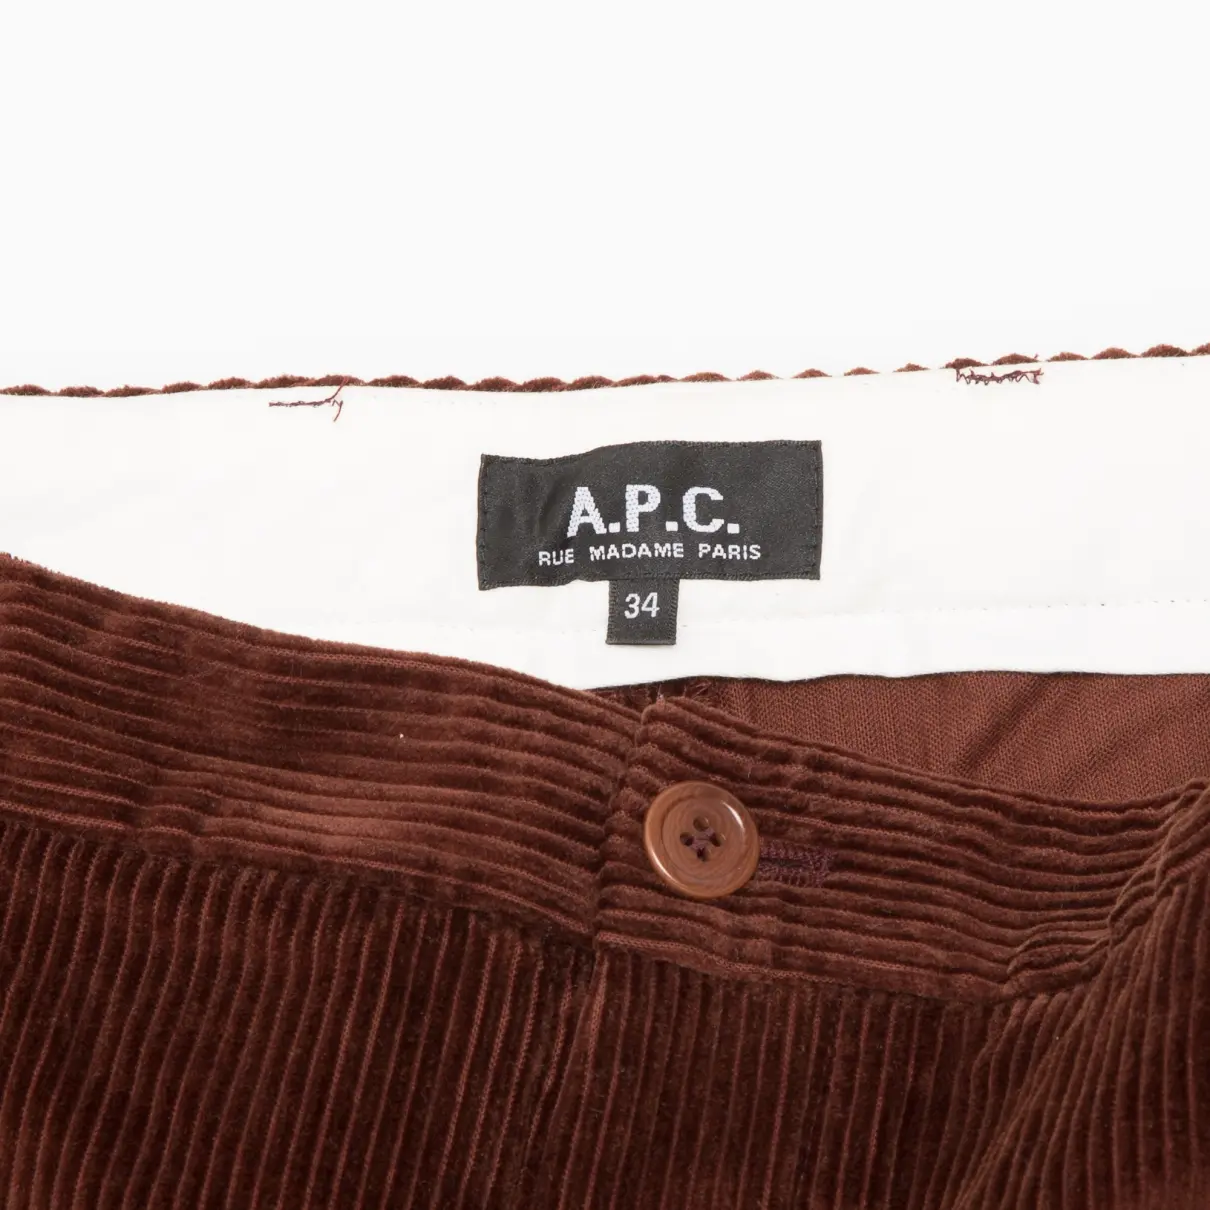 Buy APC Velvet straight pants online